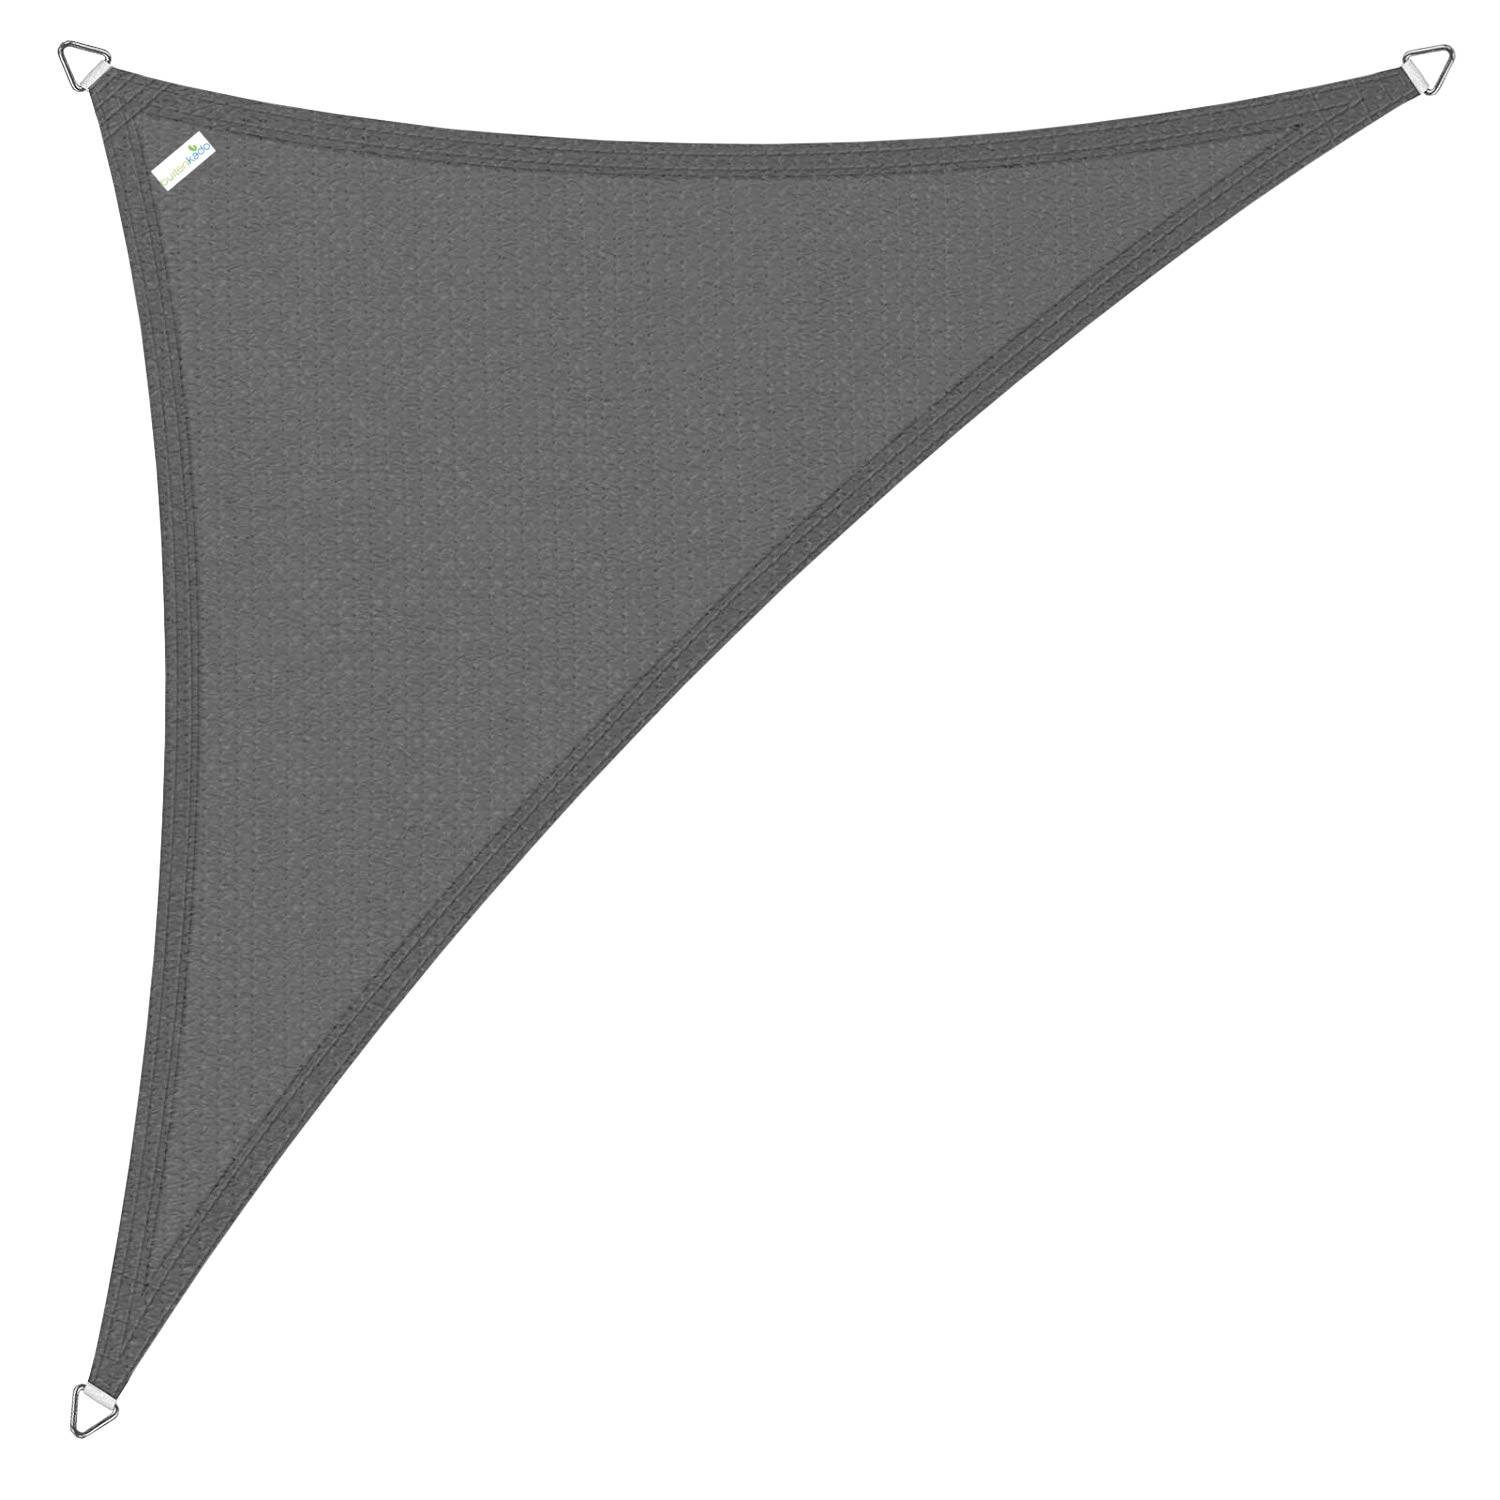 Buitenkado schaduwdoek 4x5x6,8 driehoek - antraciet